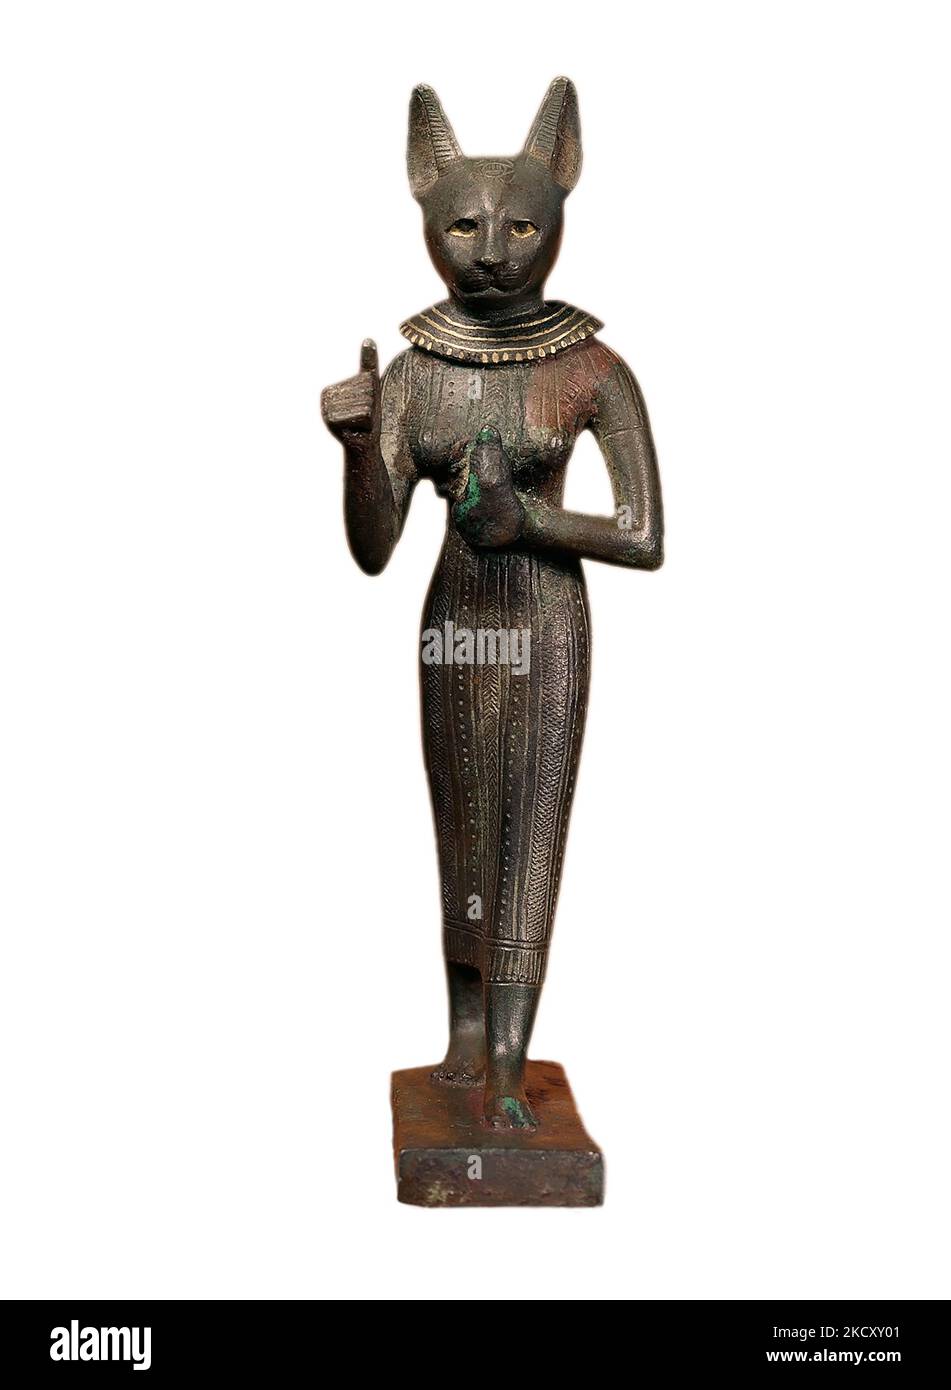 Égypte Memphis Bastet statue bronze avec incrustation d'or (Égypte ancienne et Nubie ) -4th-mi 3rd siècle BCE (période tardive - Ptolemaic) Banque D'Images